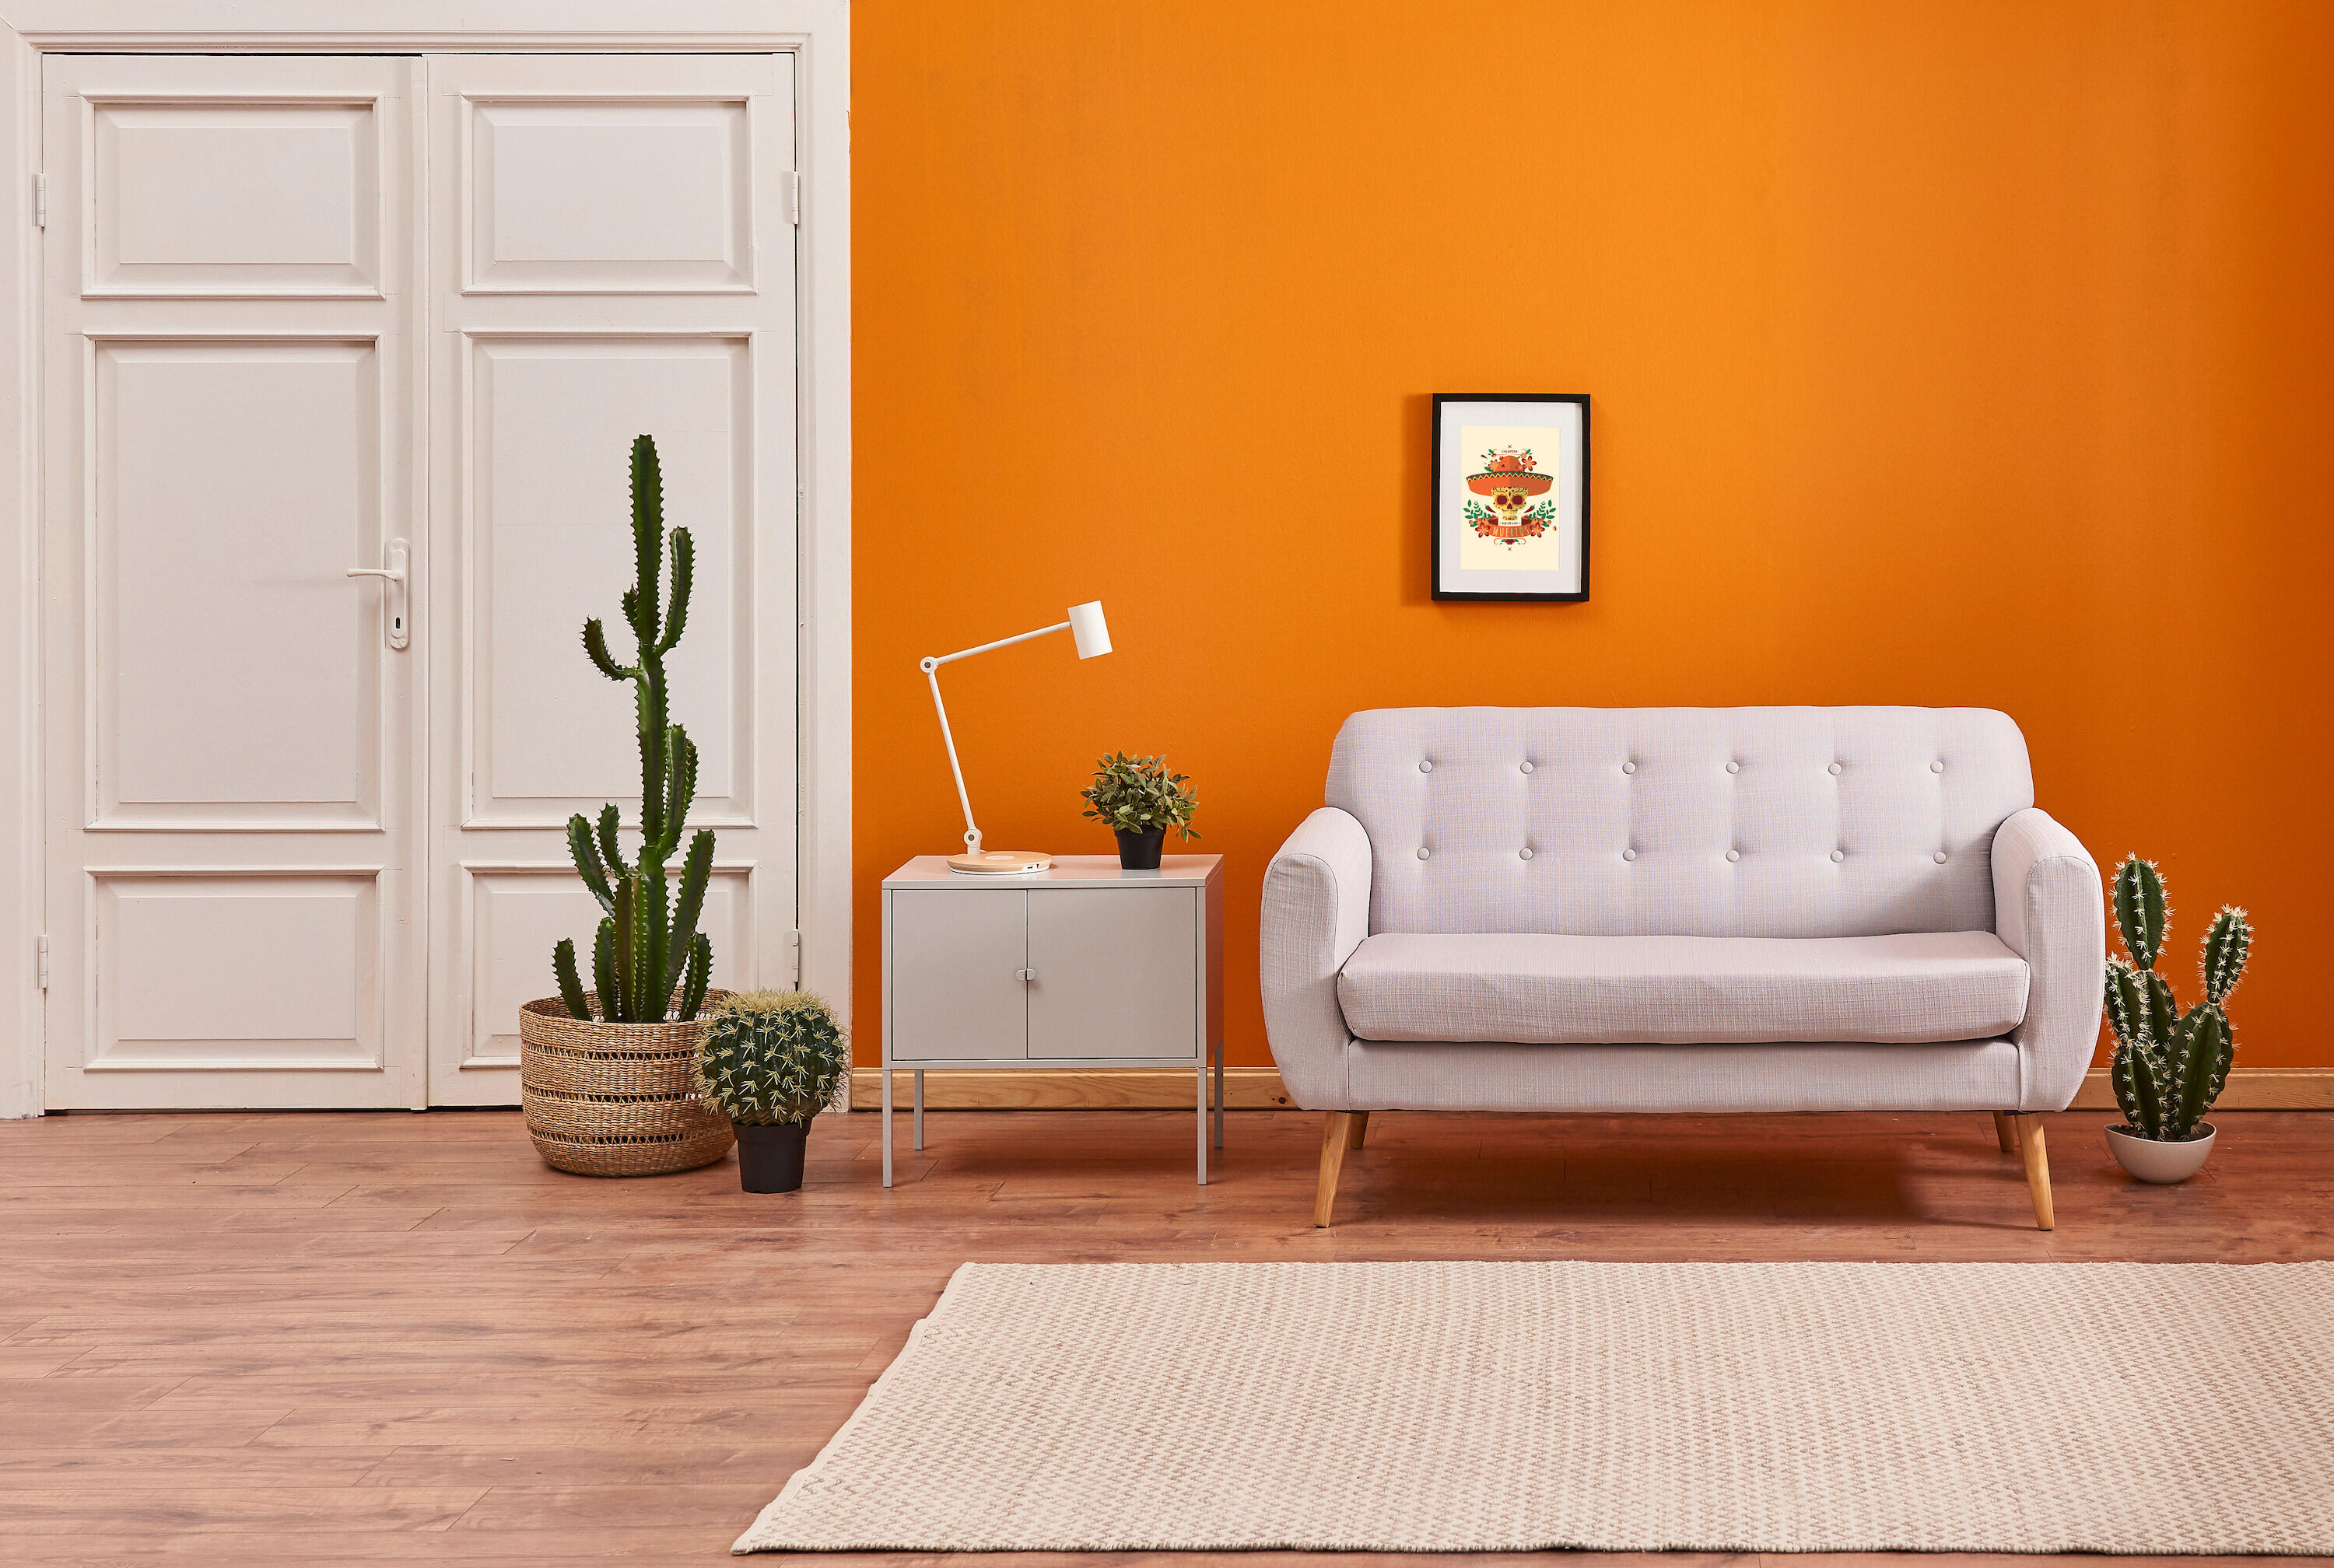 conecta-reforma-cores-decoração-laranja